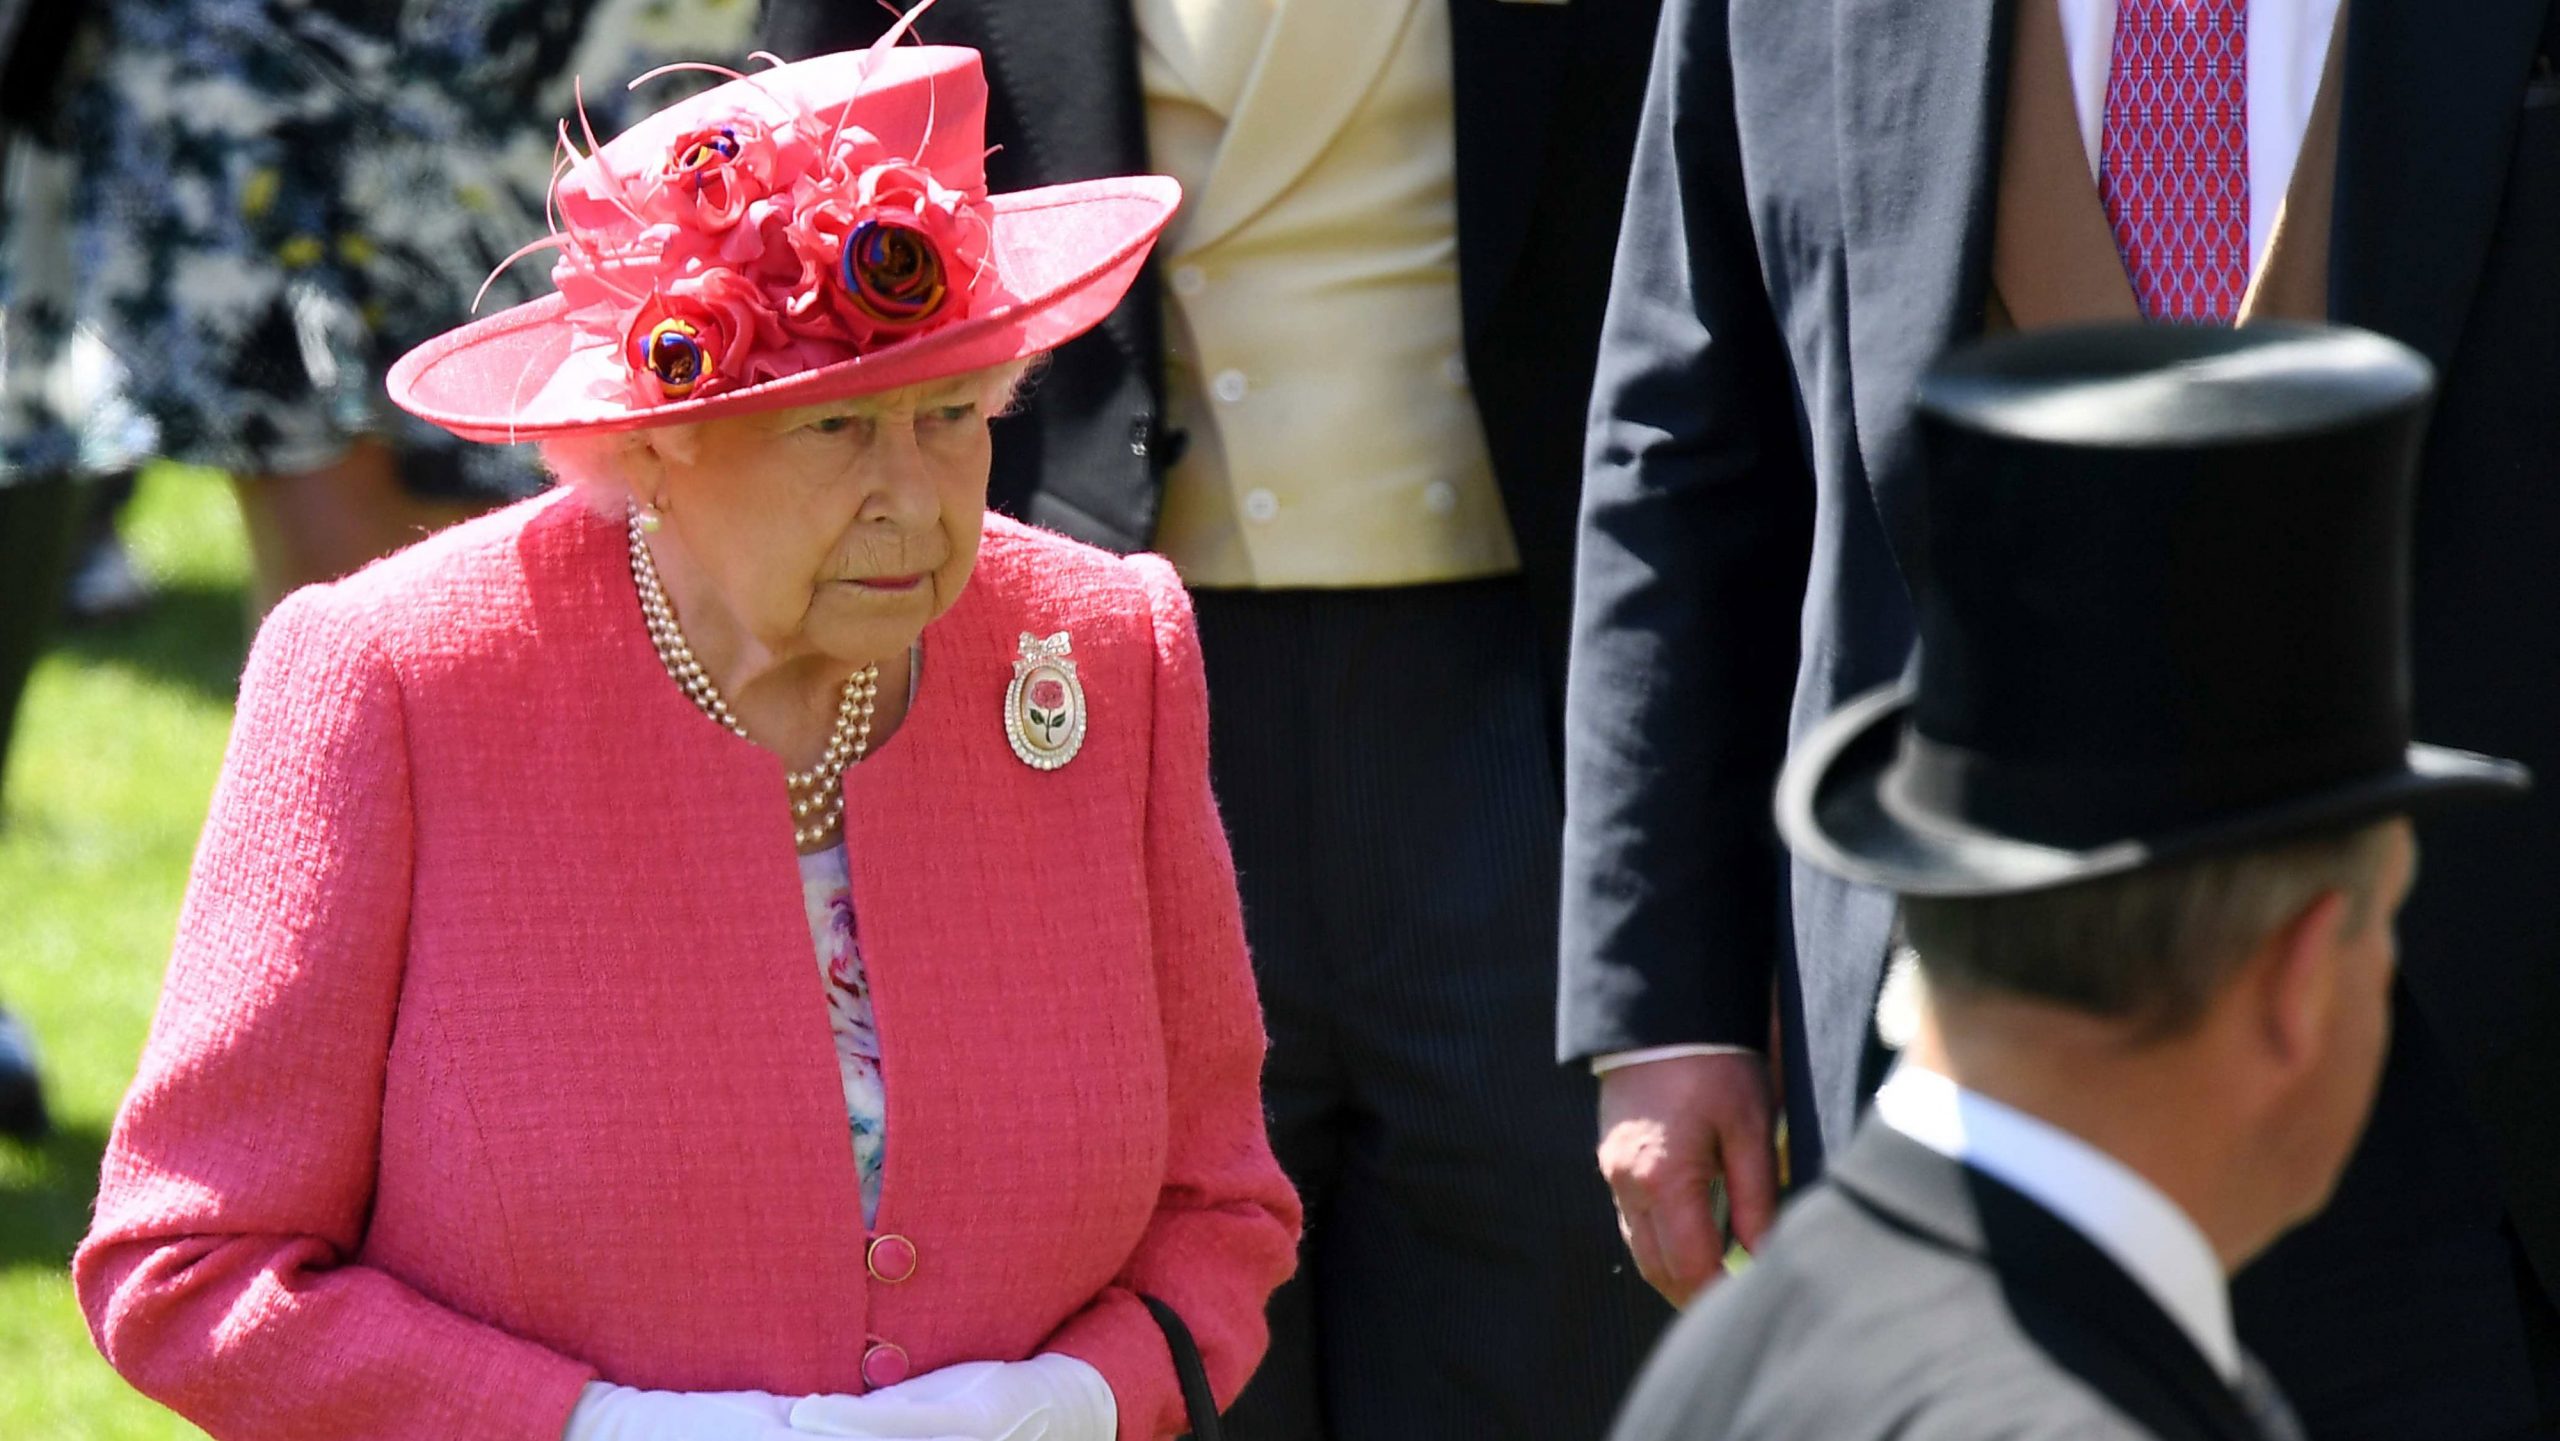 Bakingemska palata saopštila program proslave 70 godina vladavine kraljice 1